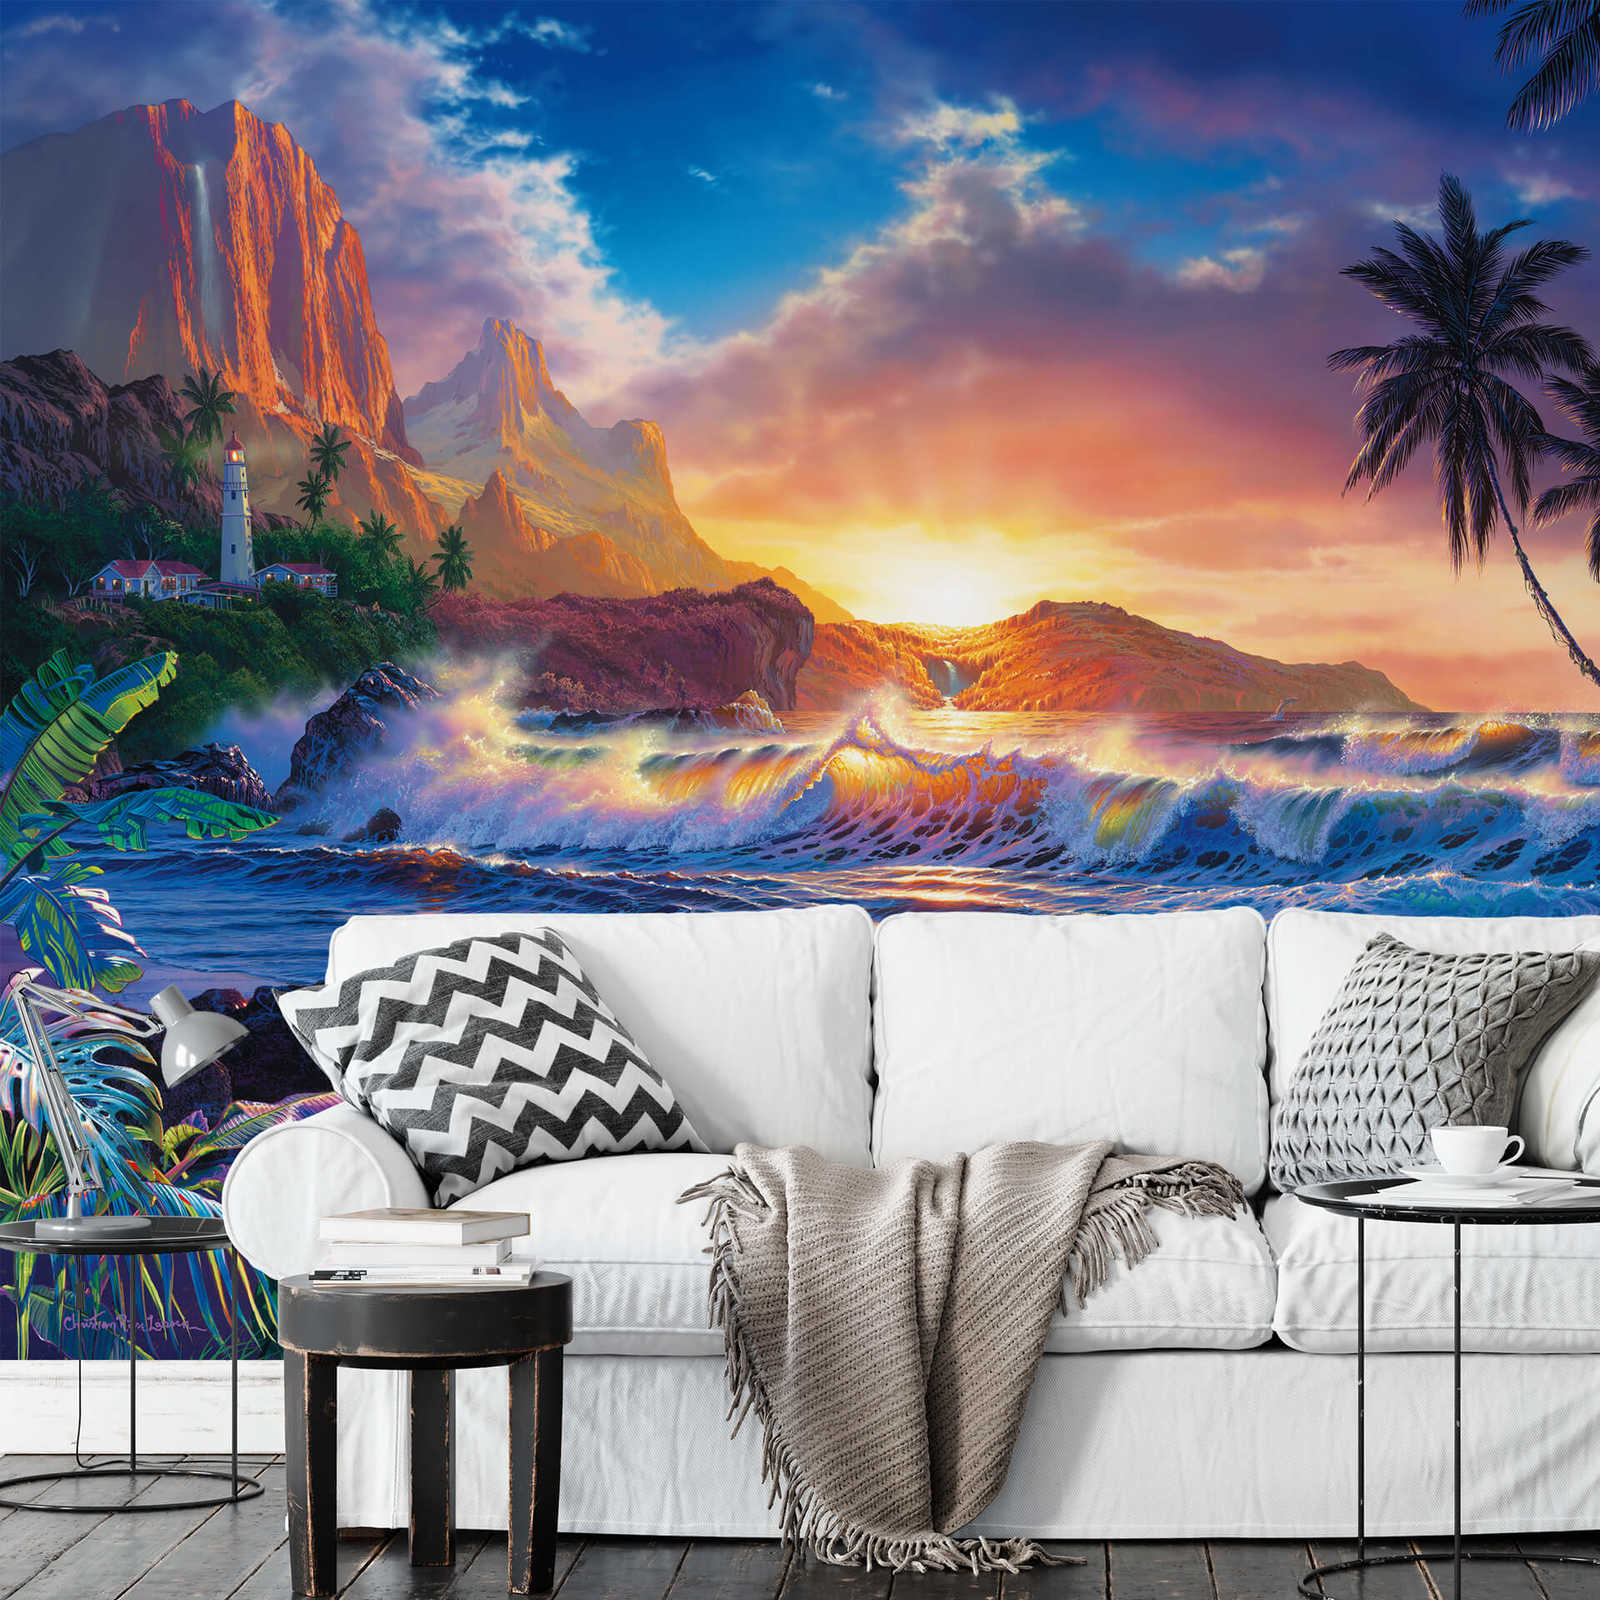             Papier peint Paradis avec paysage côtier tropical
        